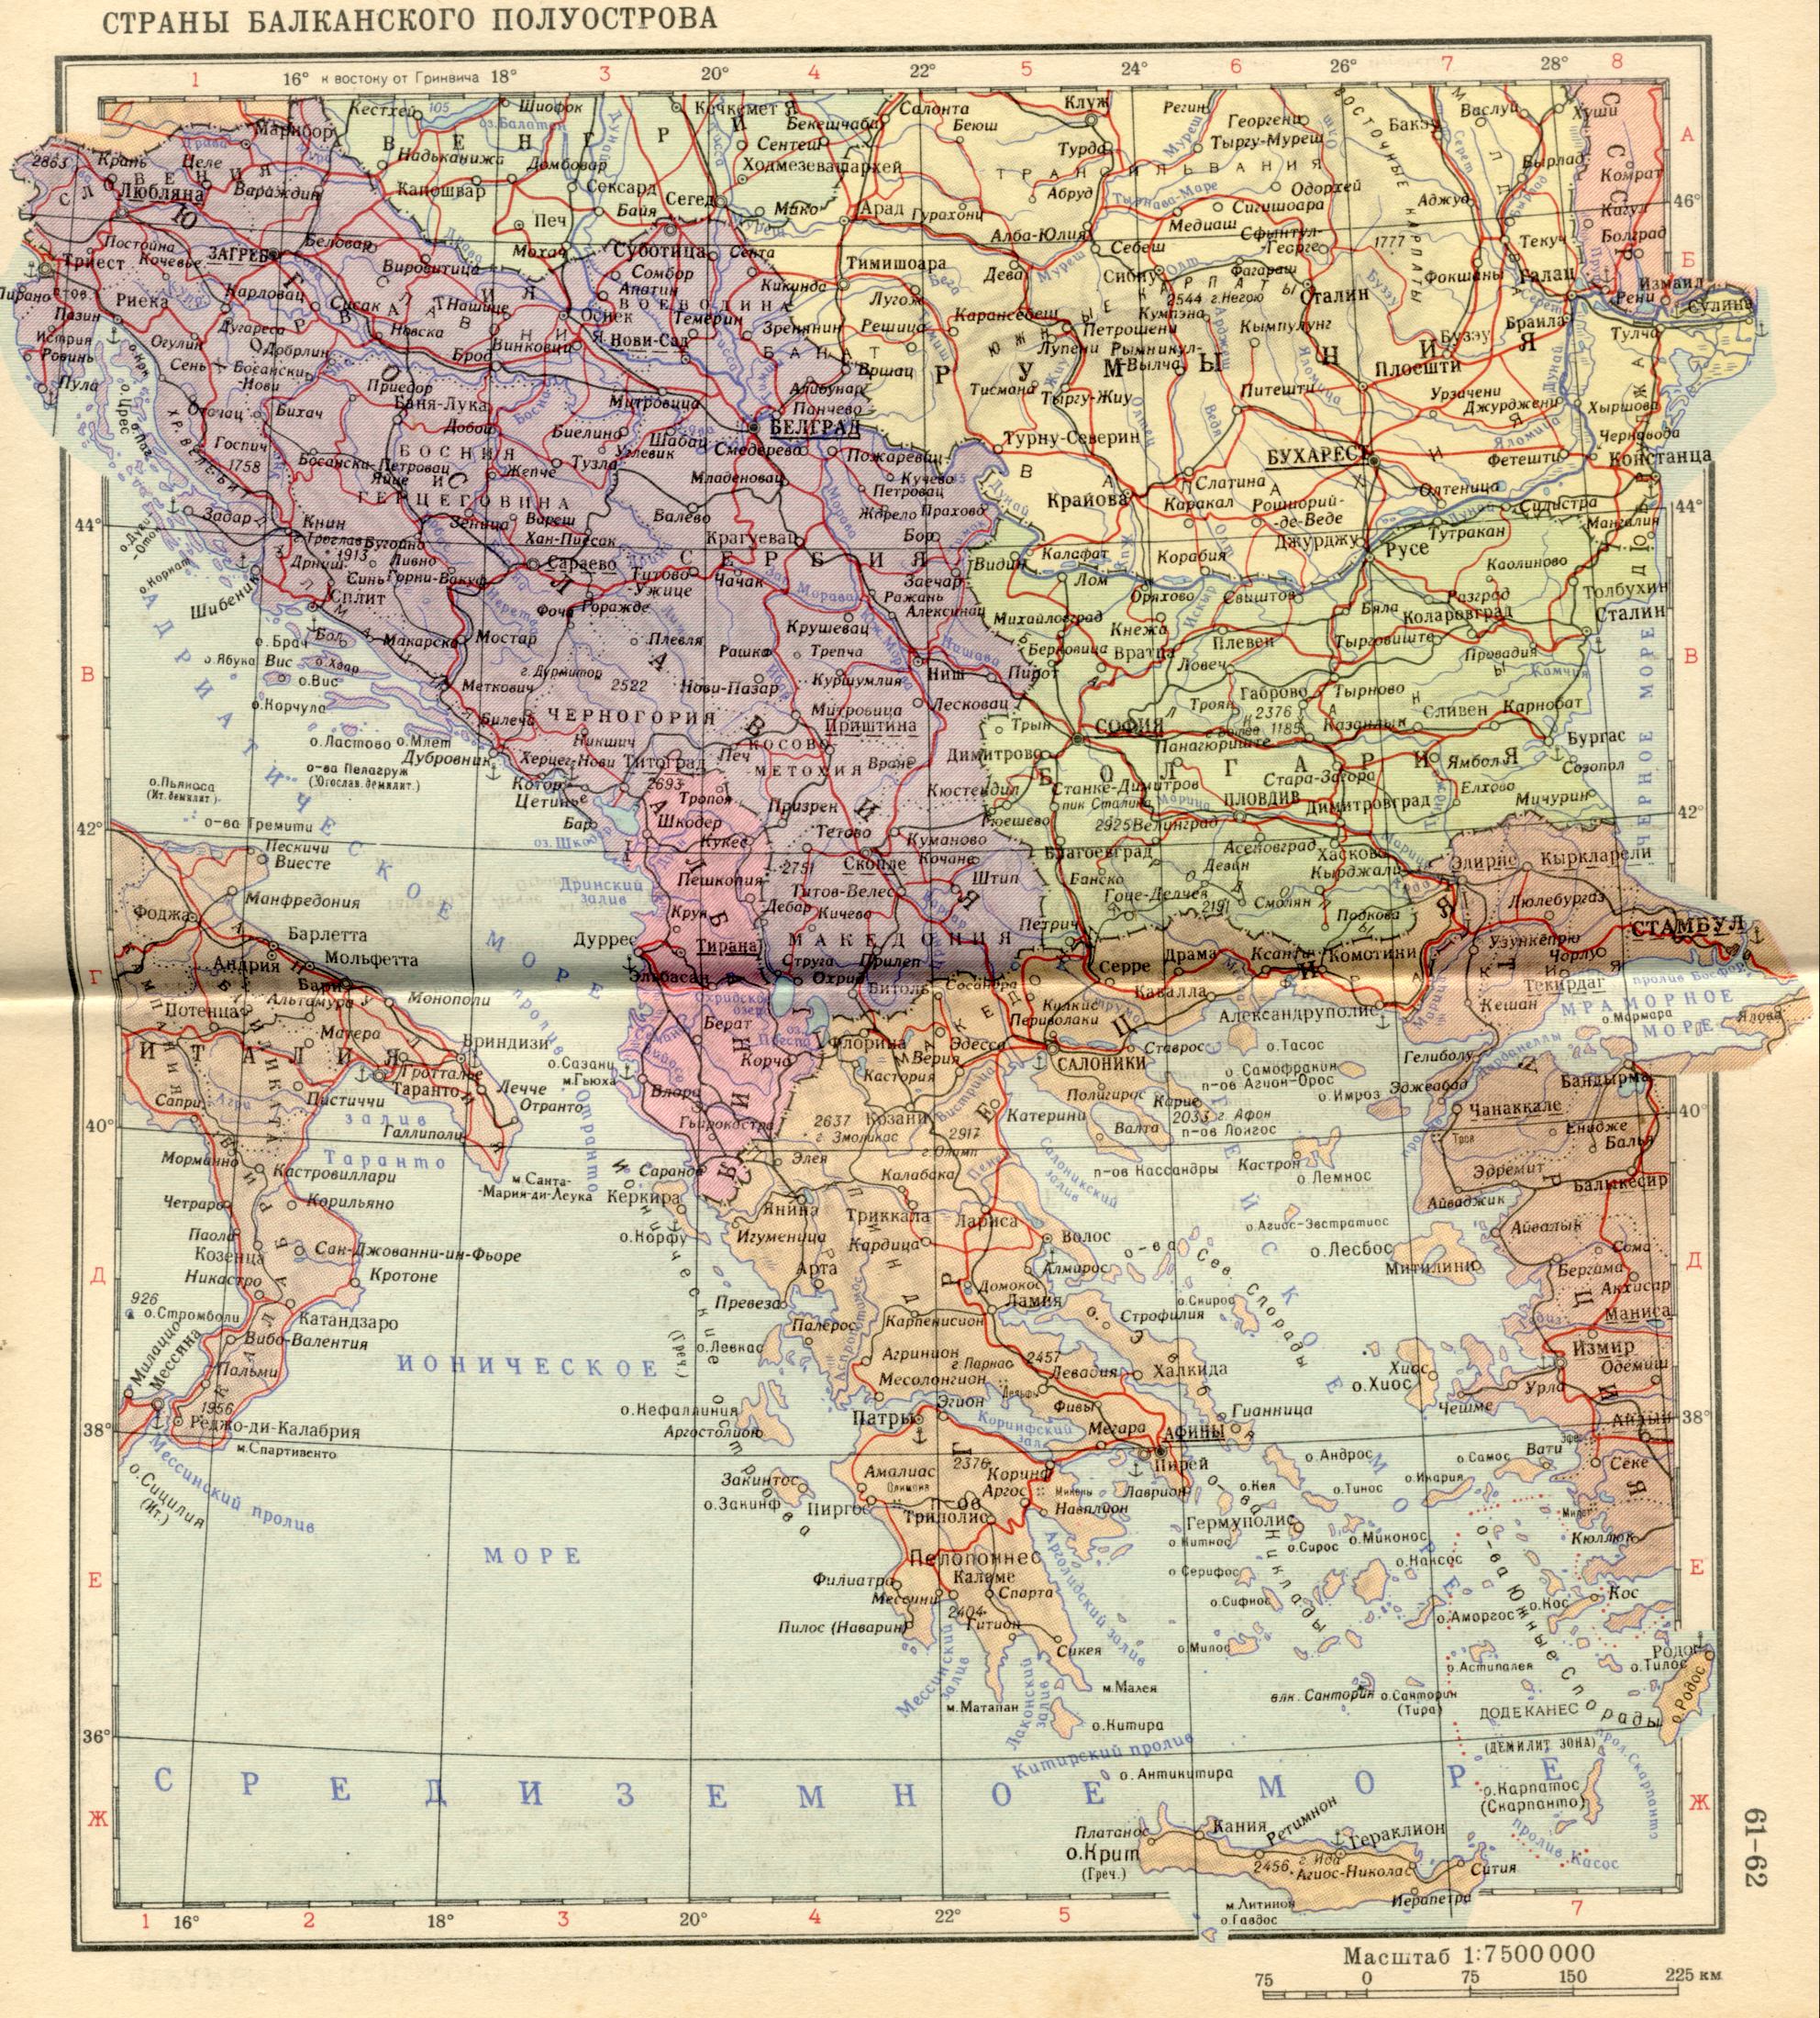 1956. Politische Karte von Europa - auf dem Balkan. Laden Sie eine detaillierte Karte